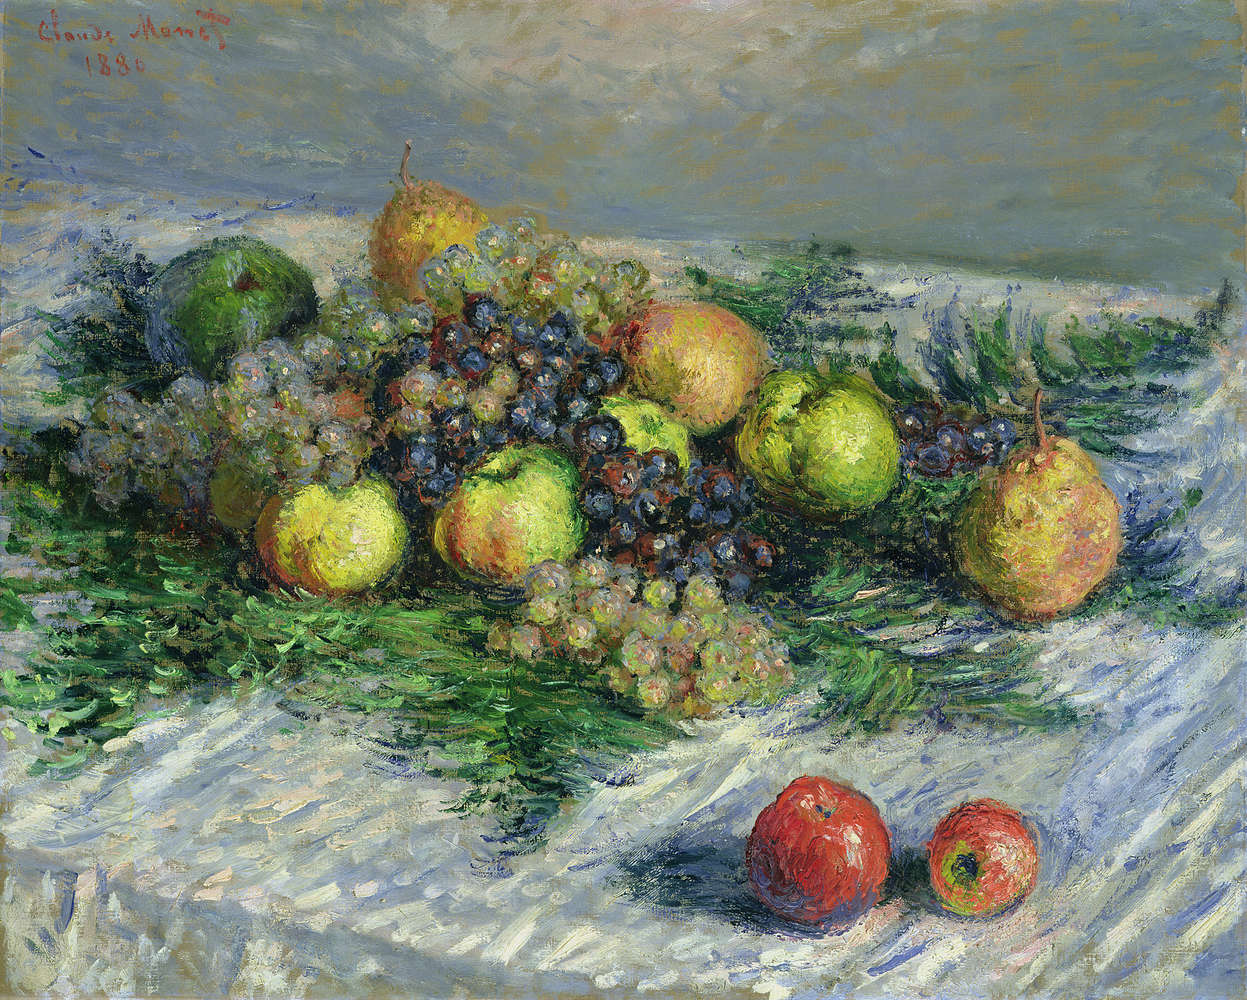             Papier peint panoramique "Nature morte aux poires et aux raisins" de Claude Monet
        